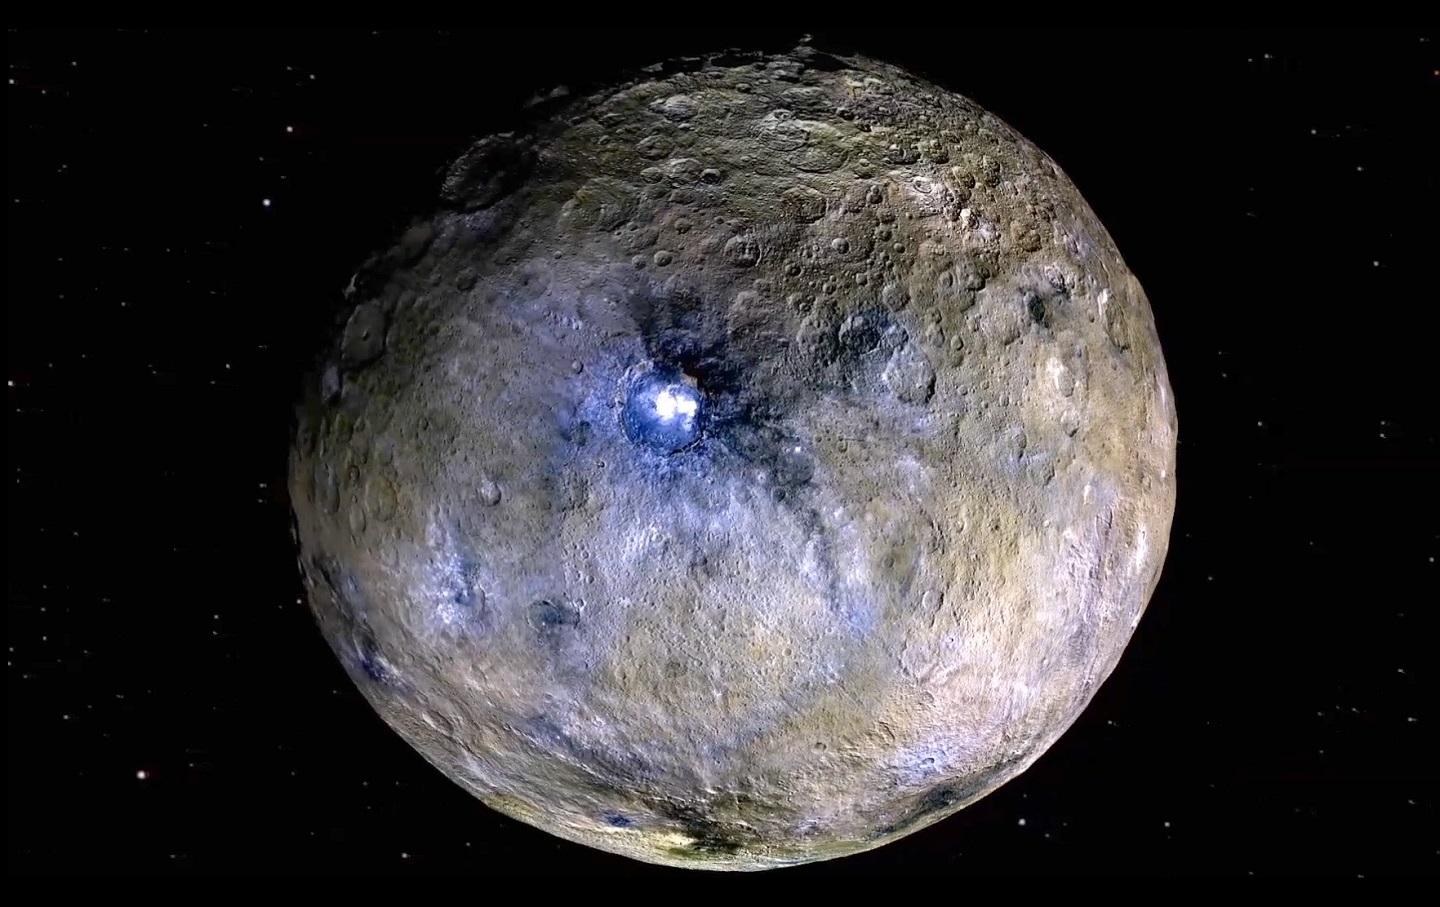 Der Zwergplanet Ceres mit dem Krater Occator